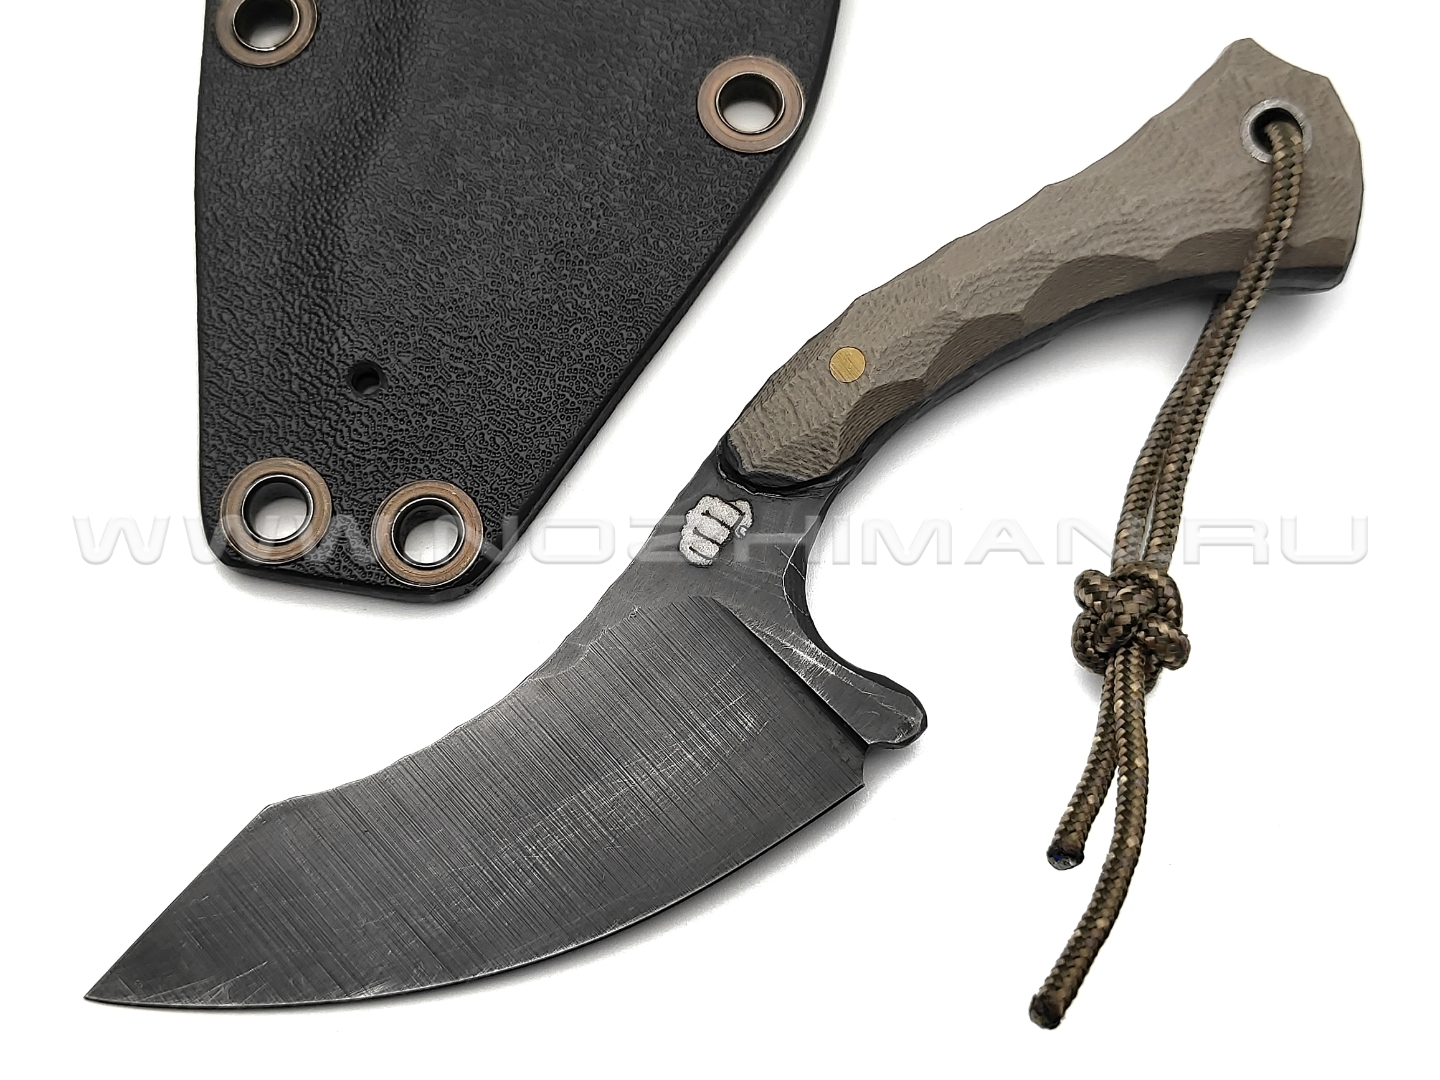 Андрей Кулаков нож KUL025 сталь 9ХС, рукоять G10 tan